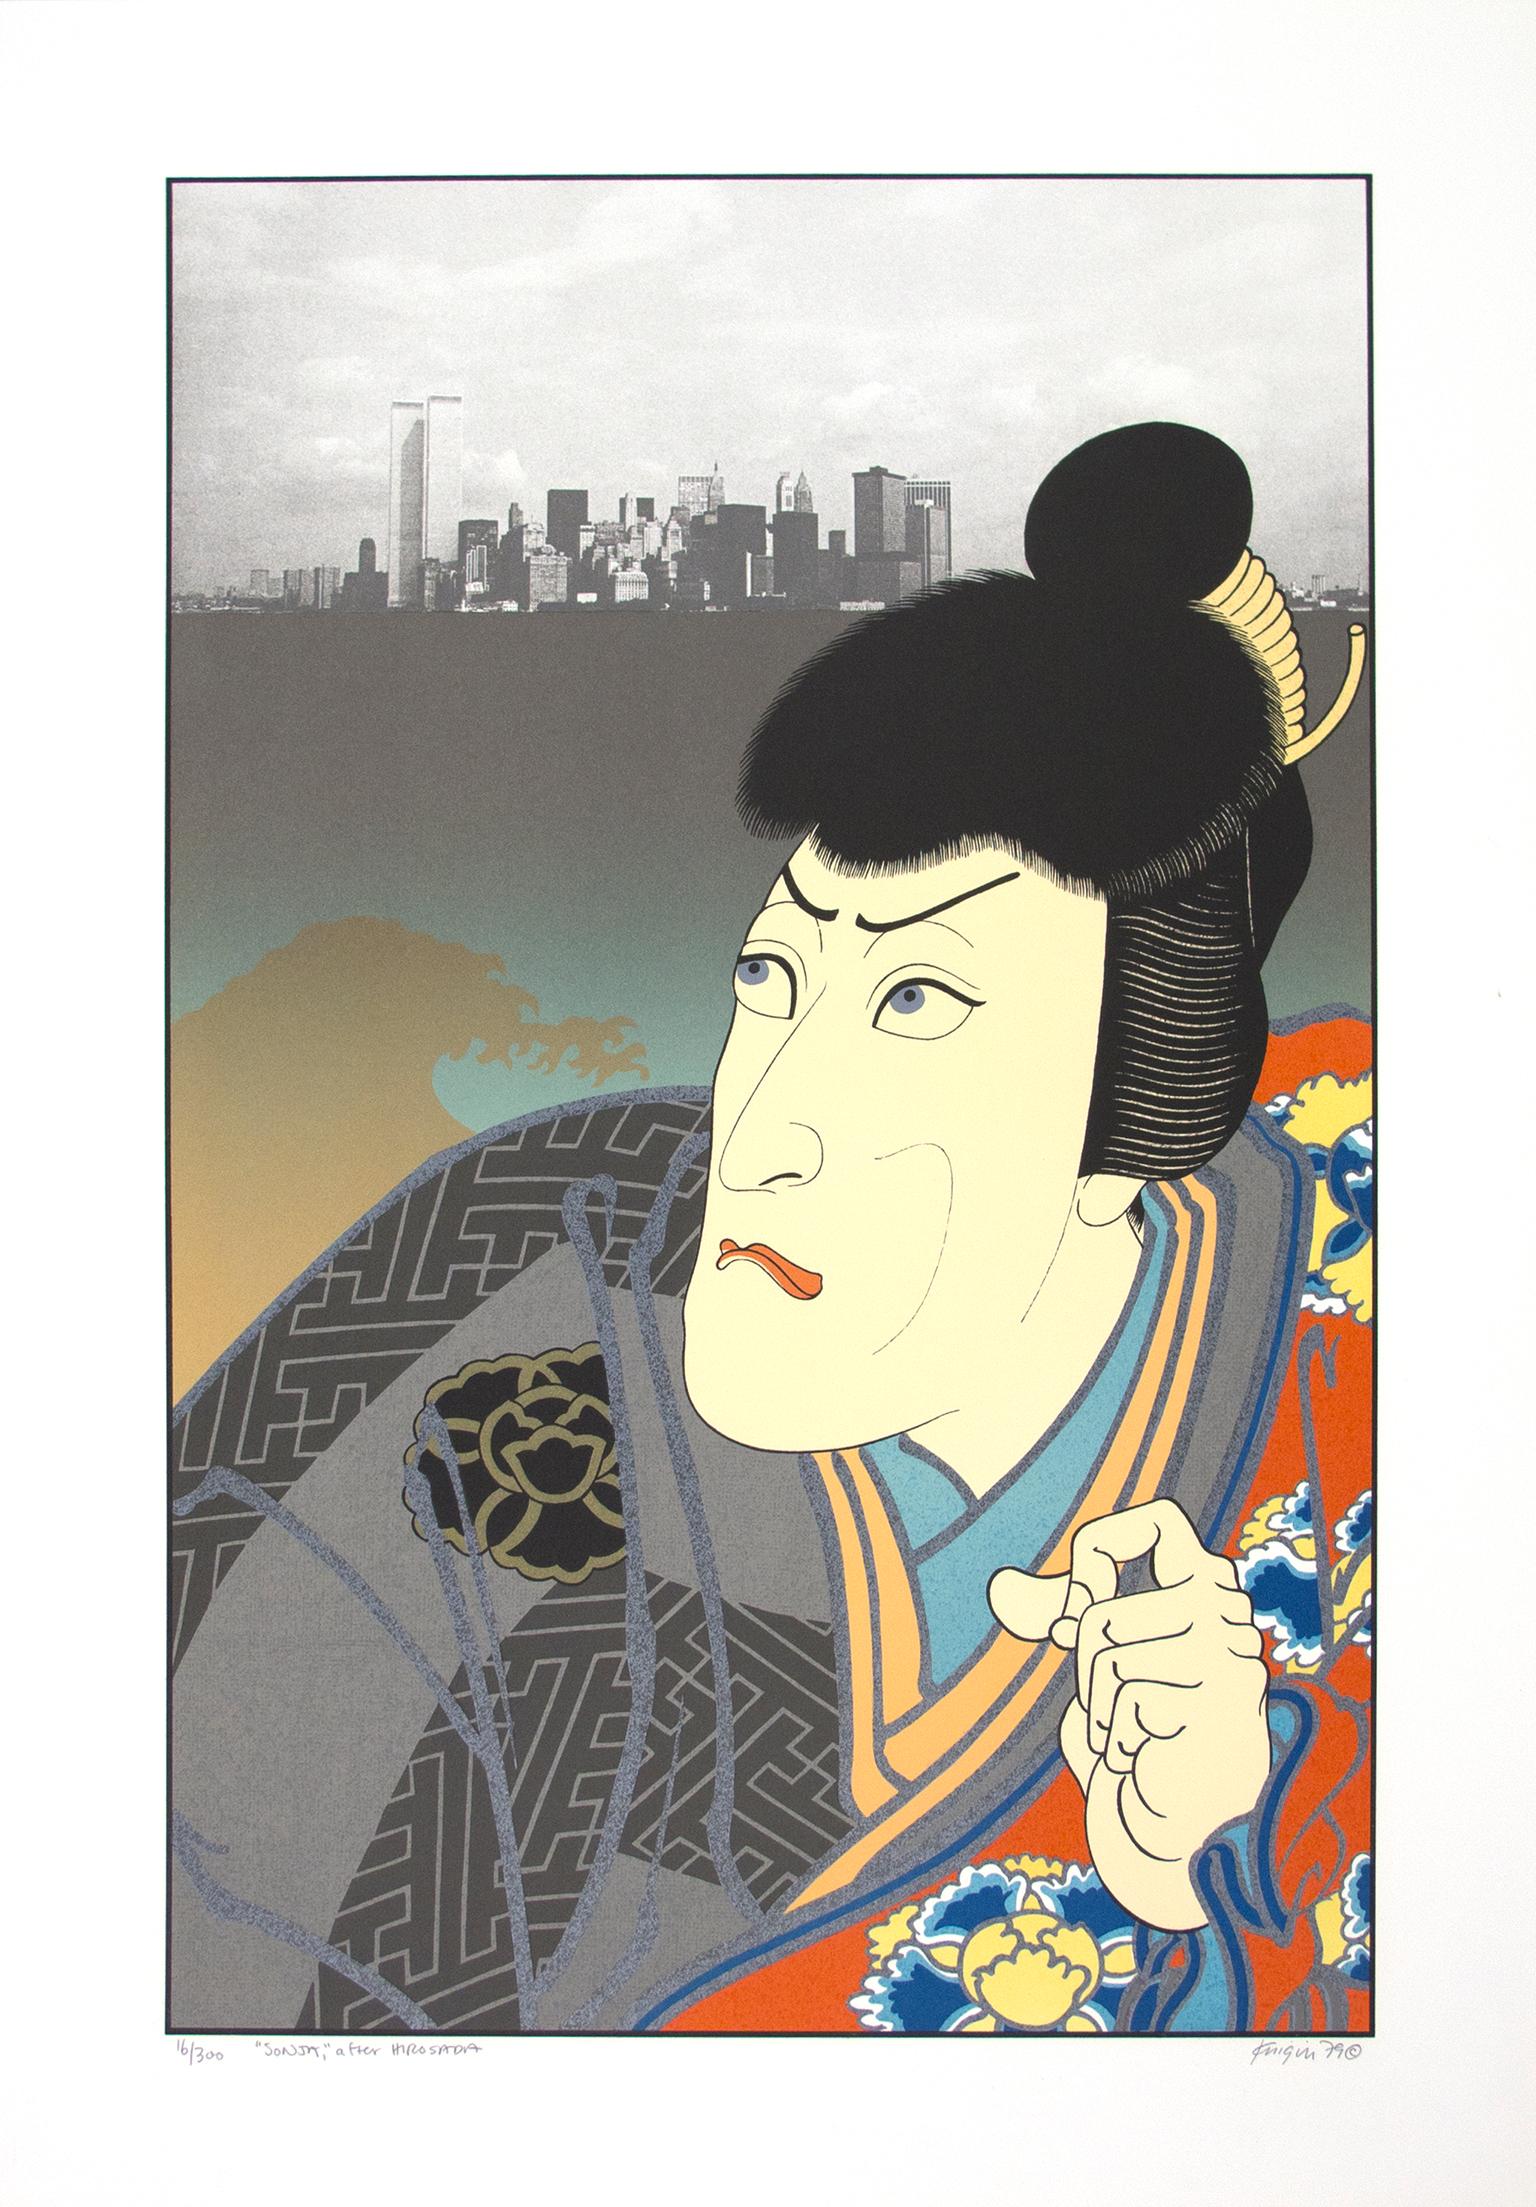 Michael Knigin Portrait Print - "Sonja, After Hirosada" original lithograph pop figure portrait Japan city scape